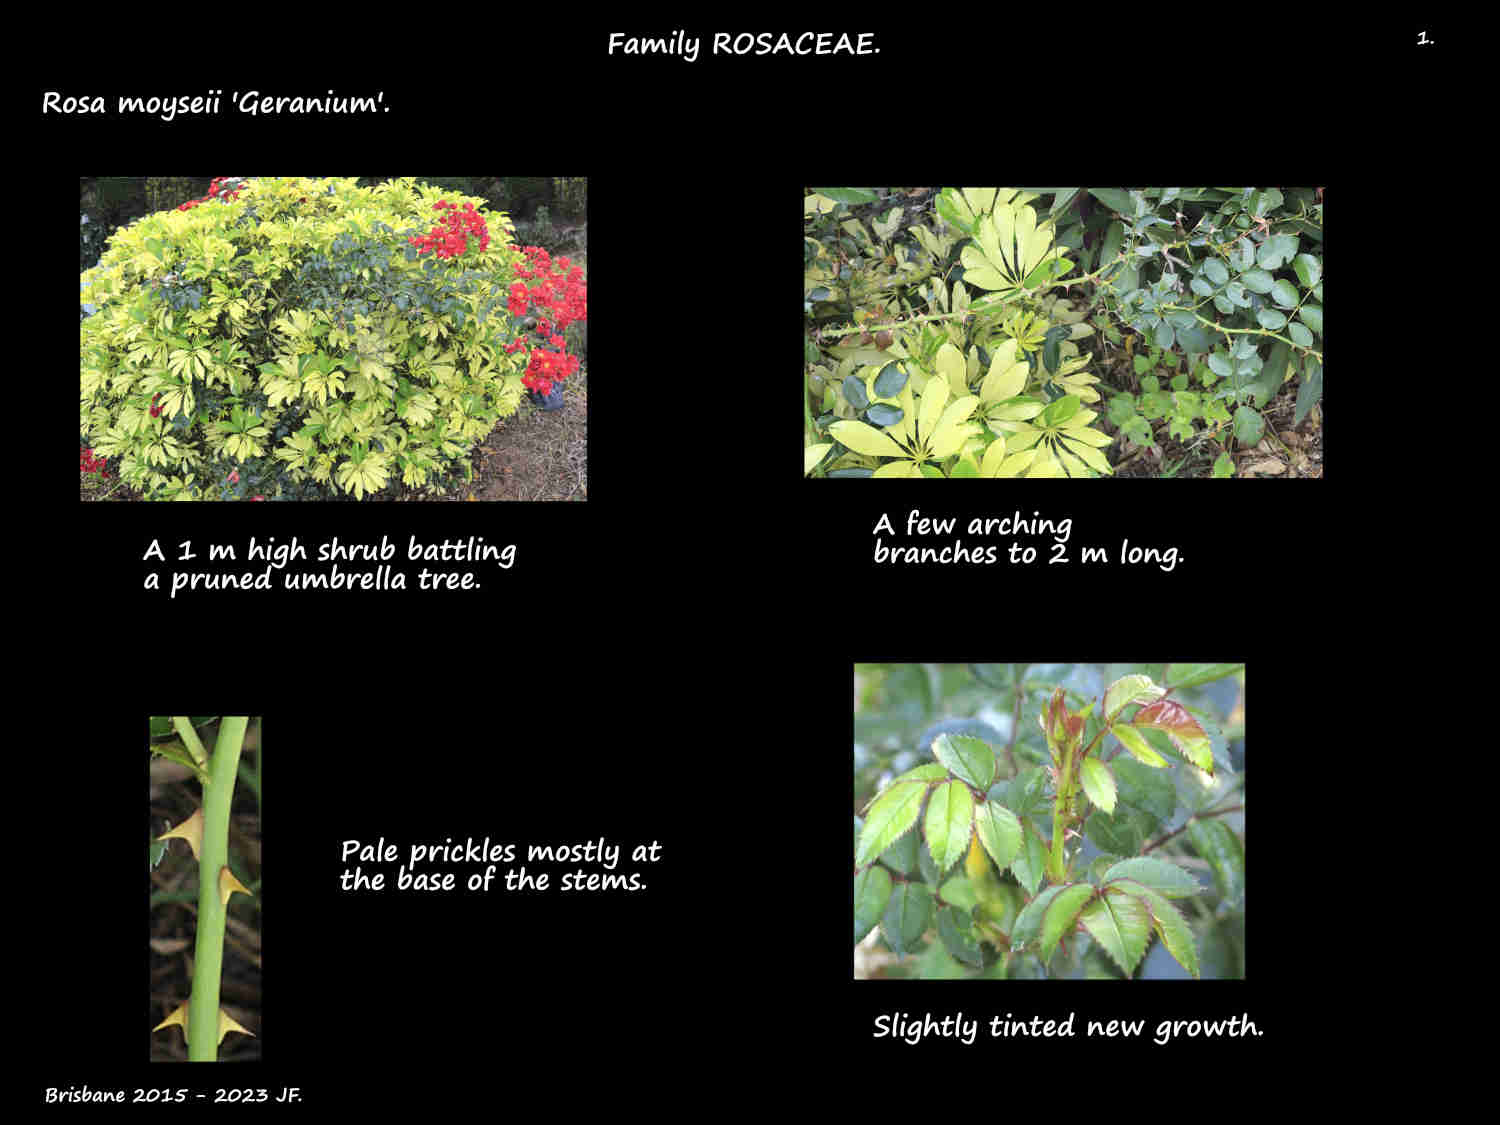 1 Rosa moyseii 'Geranium' plant & prickles